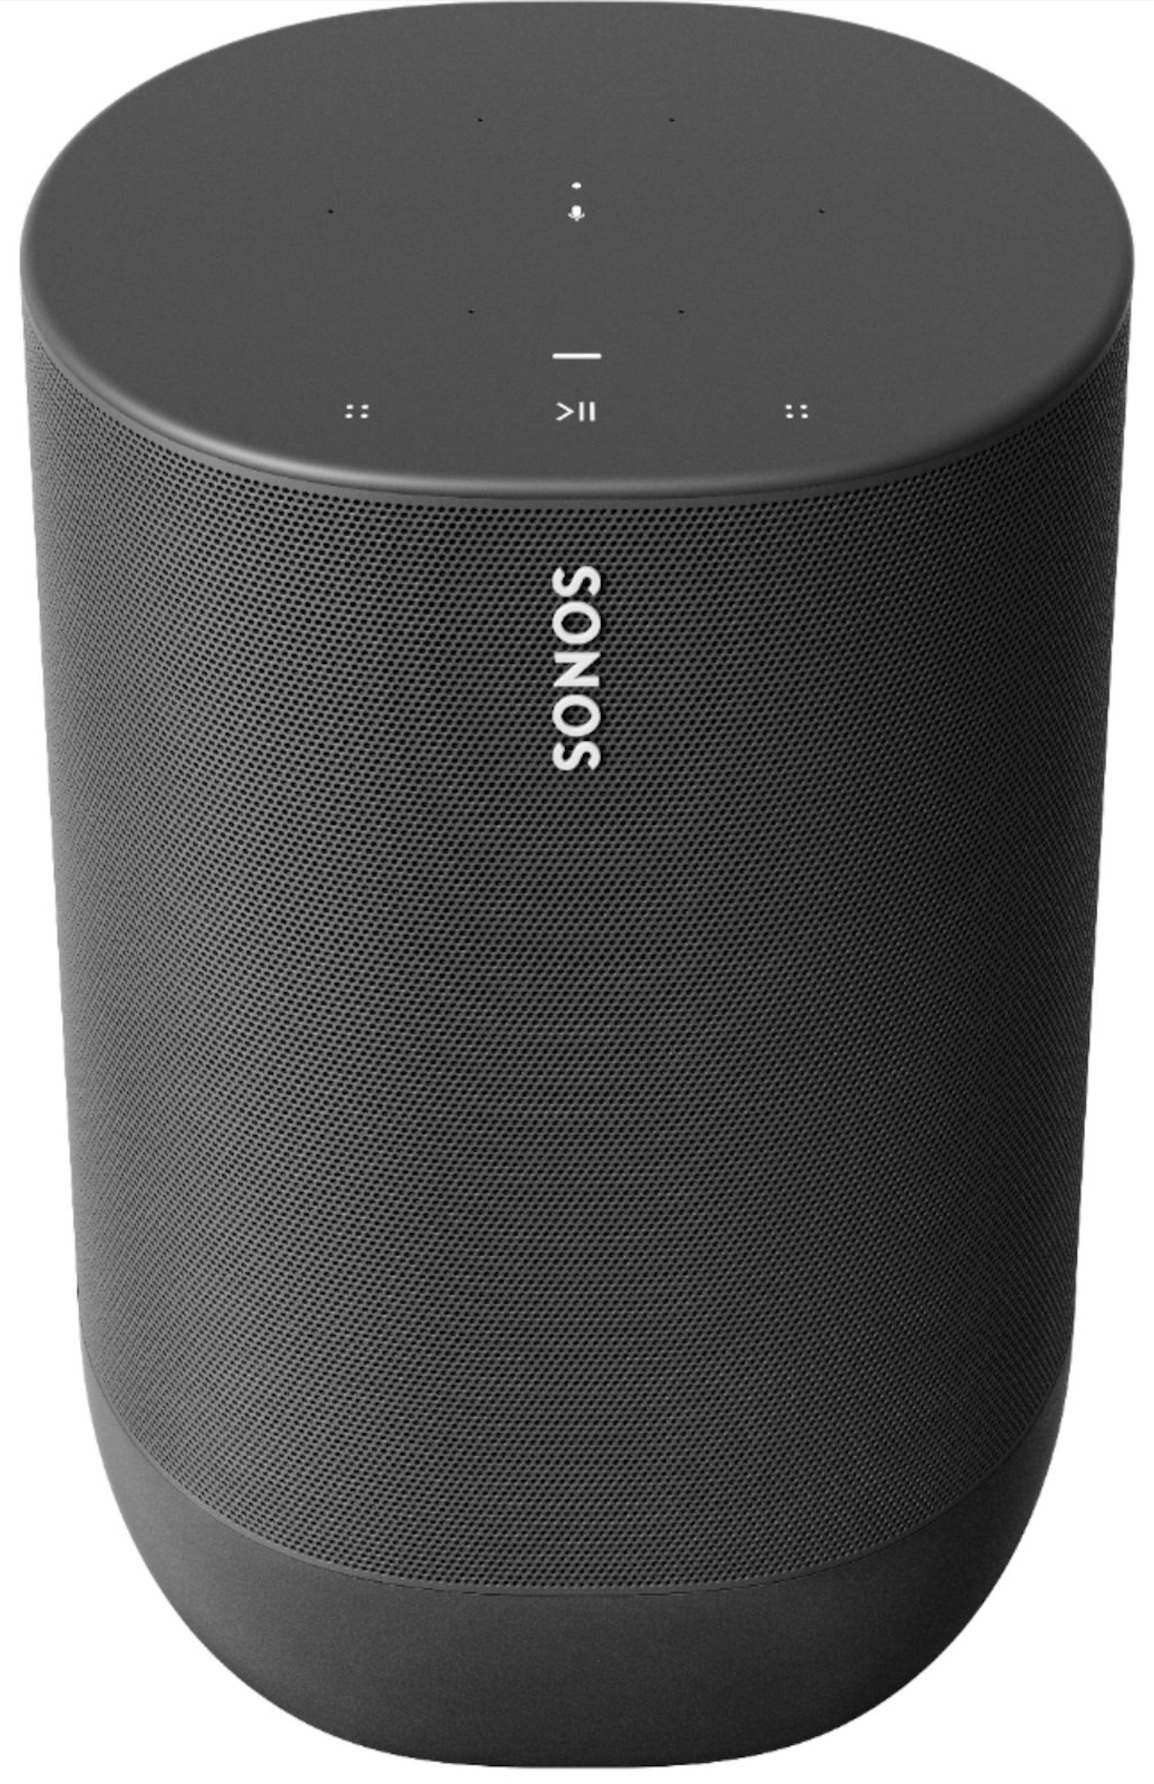 Sonos plant Bluetooth-Lautsprecher - Bild 1